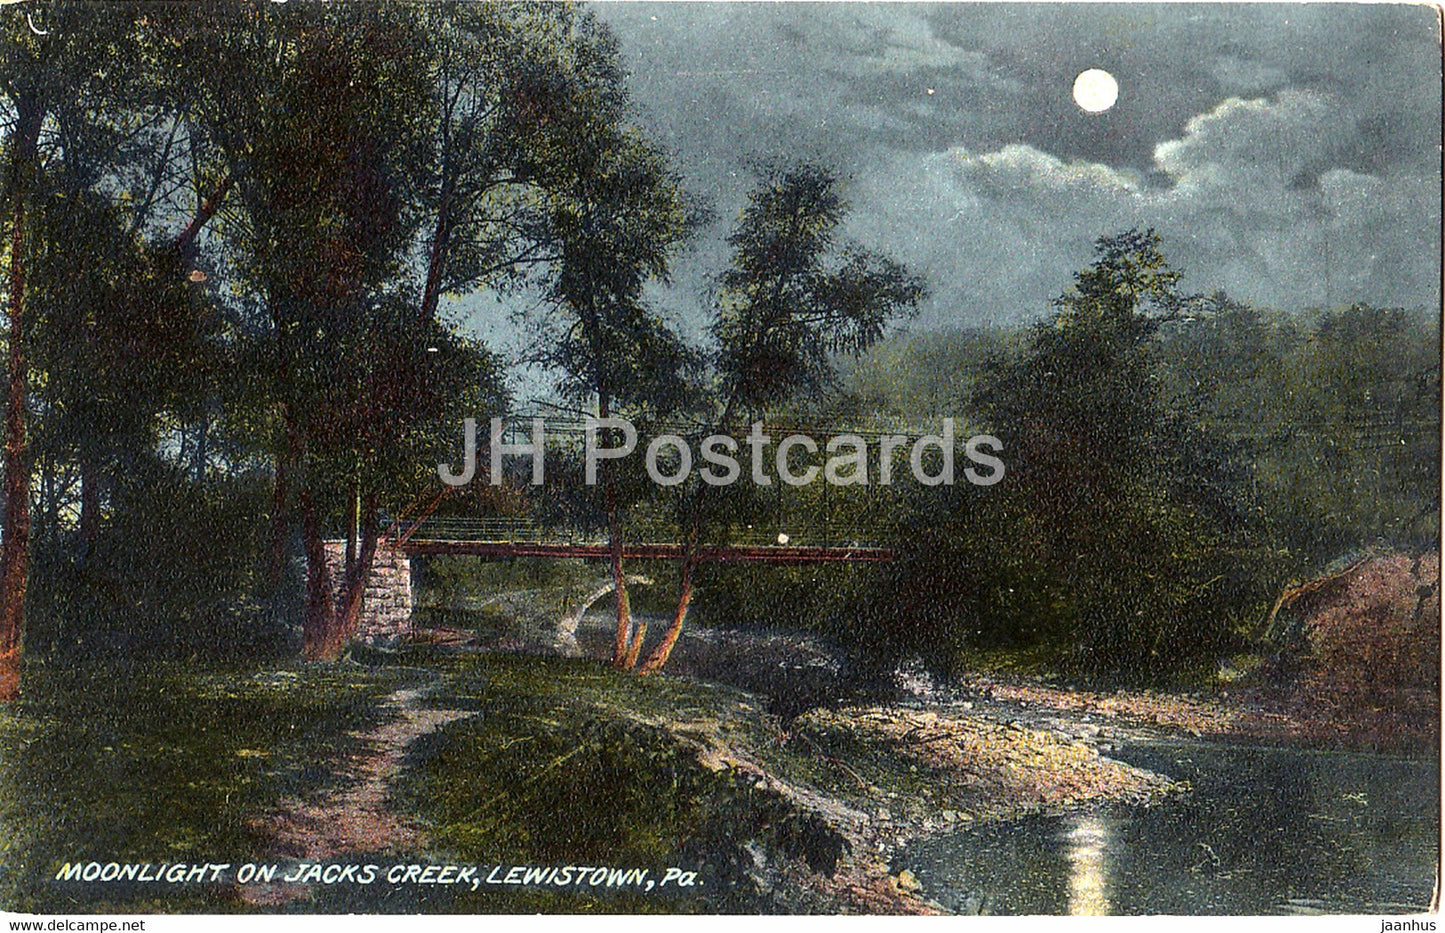 Lewistown - Moonlight on Jacks Creek - PA - 7353 - old postcard - United States - USA - unused - JH Postcards